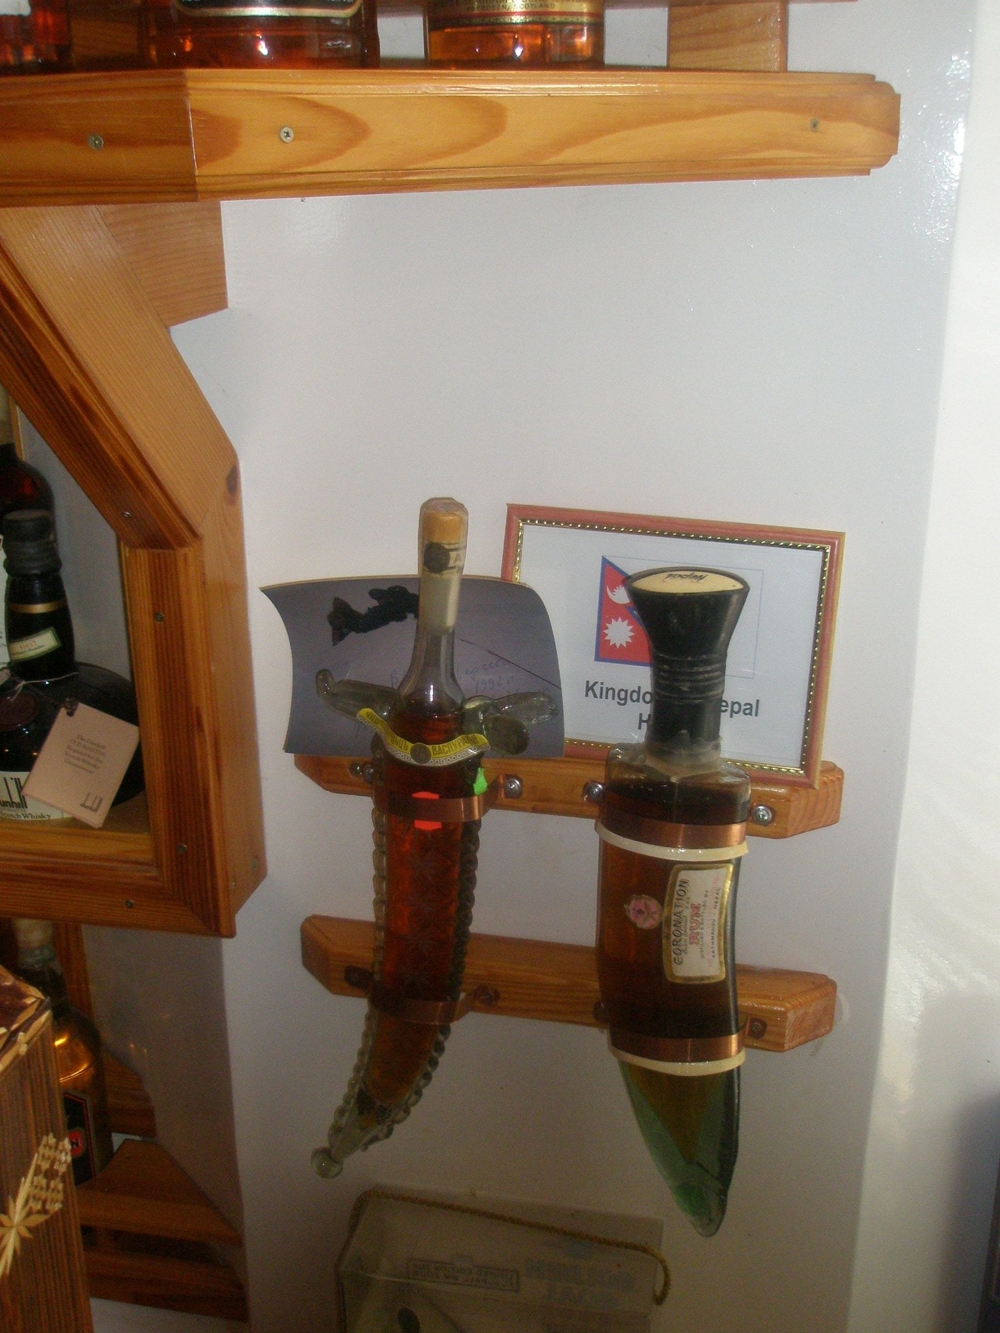 Частный музей вина "Бутылка"